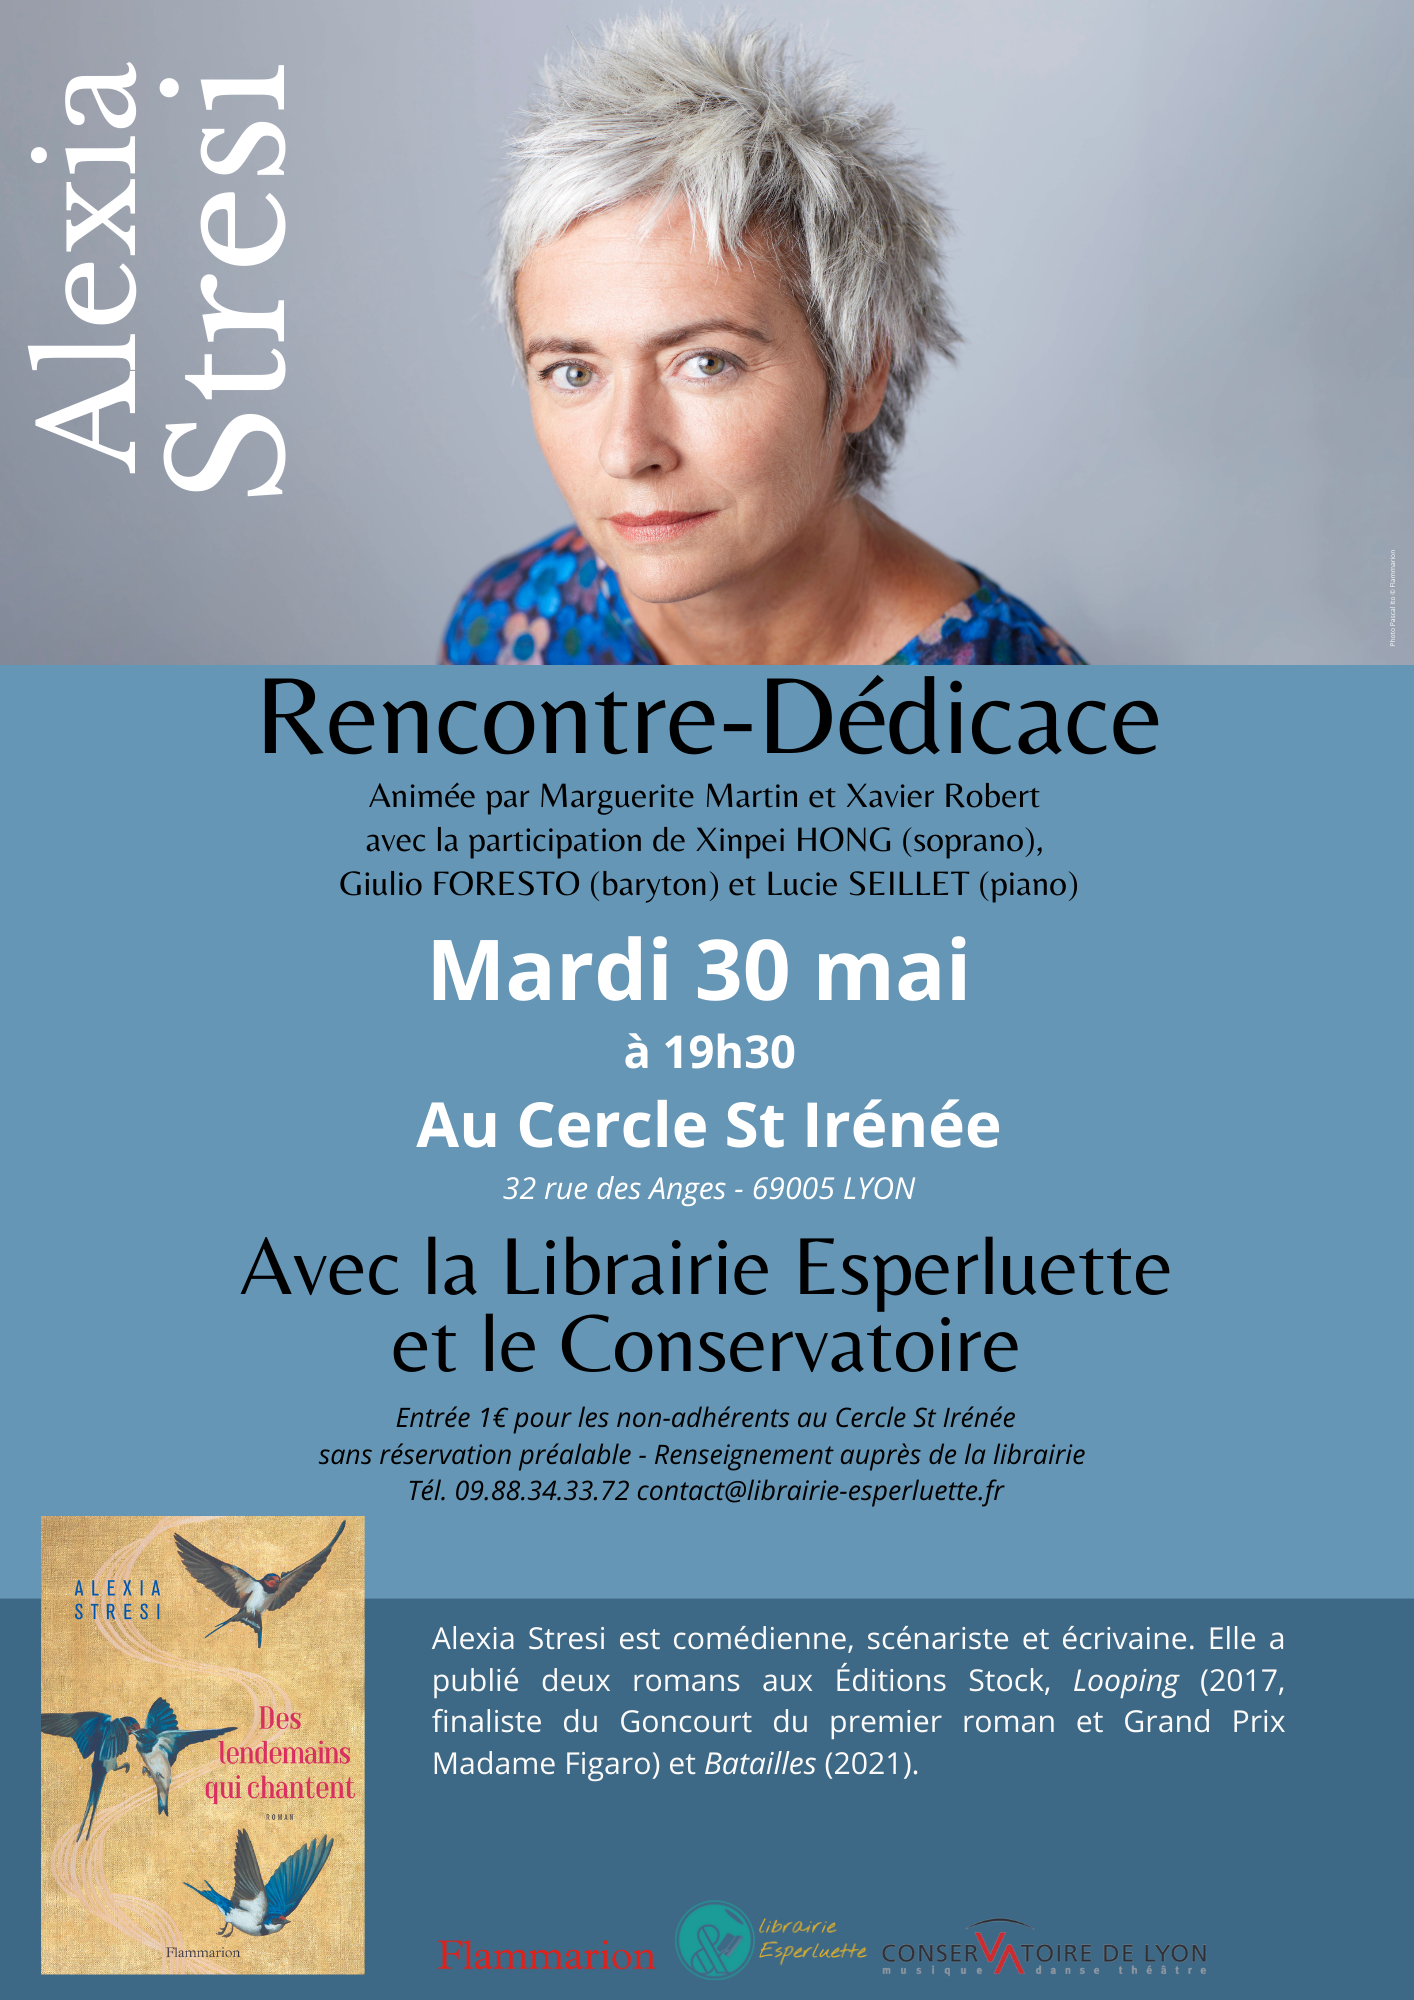 You are currently viewing Rencontre avec Alexia Stresi autour de son roman Des lendemains qui chantent, le 30/05 à 19h30